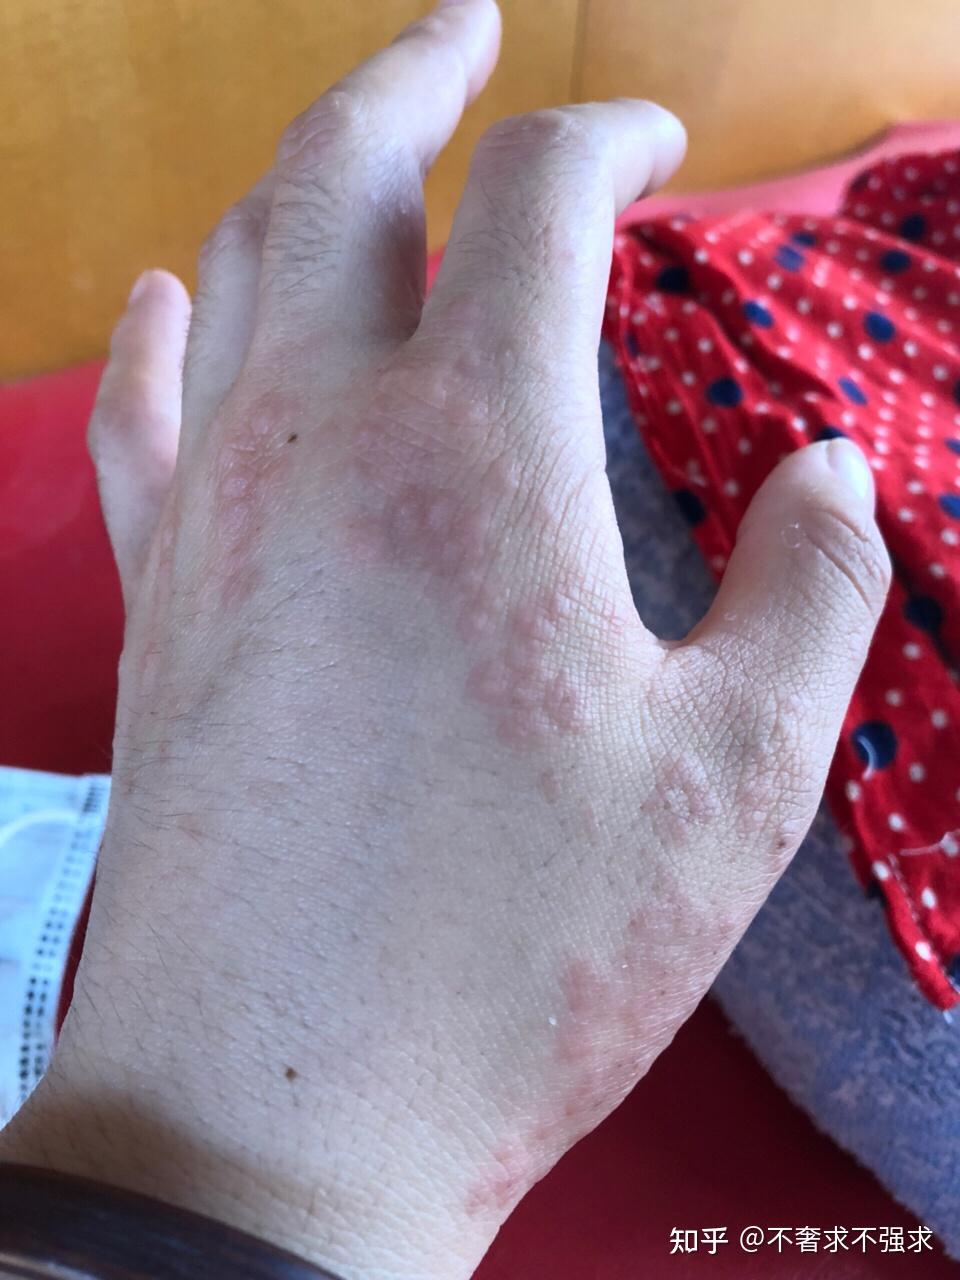 湿疹用什么药能治好不反复是长在手部的湿疹